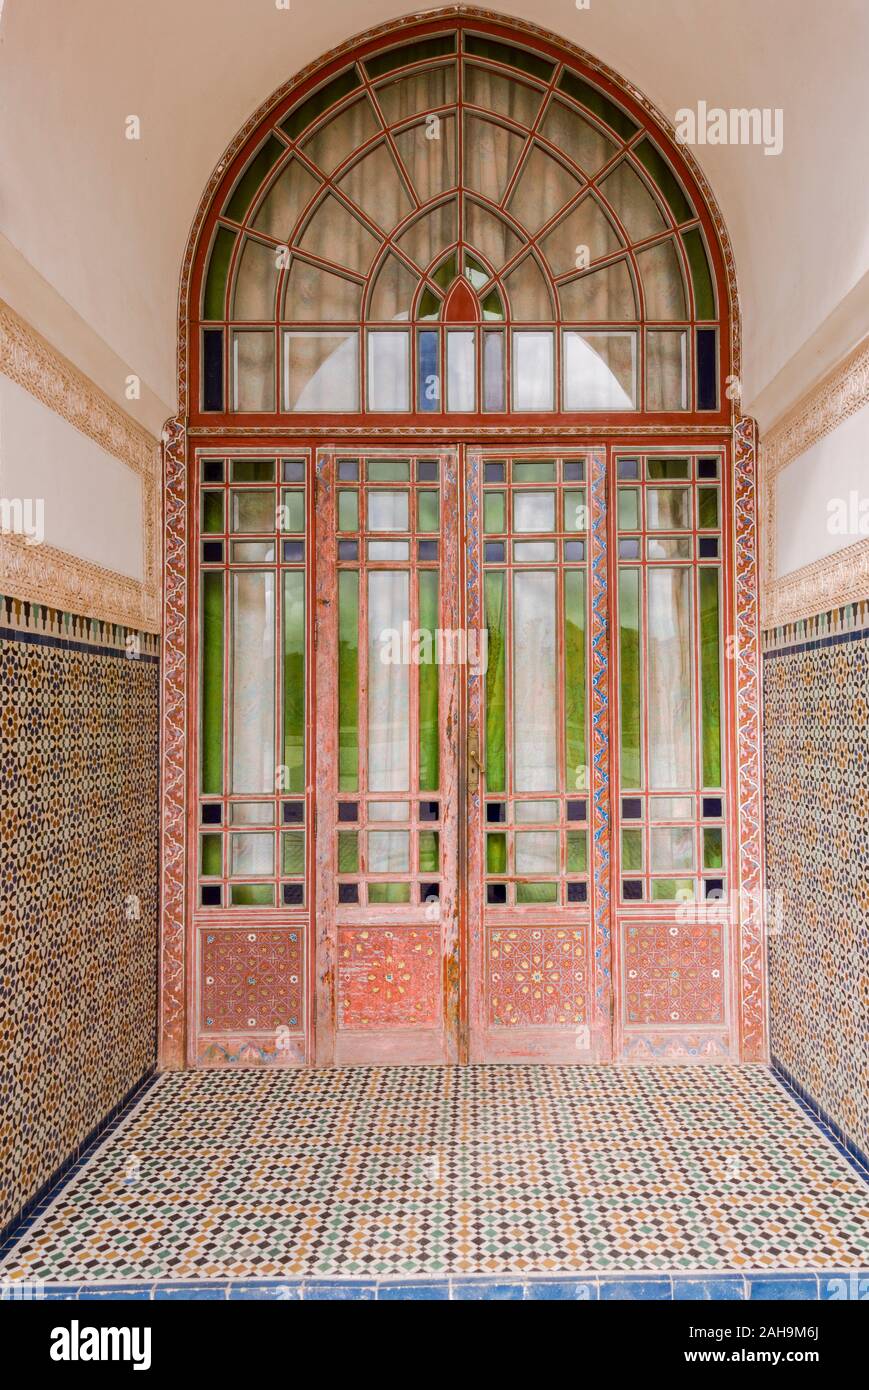 Porte d'entrée, carrelage de style marocain, méditerranéen, Marrakech, Maroc. Banque D'Images